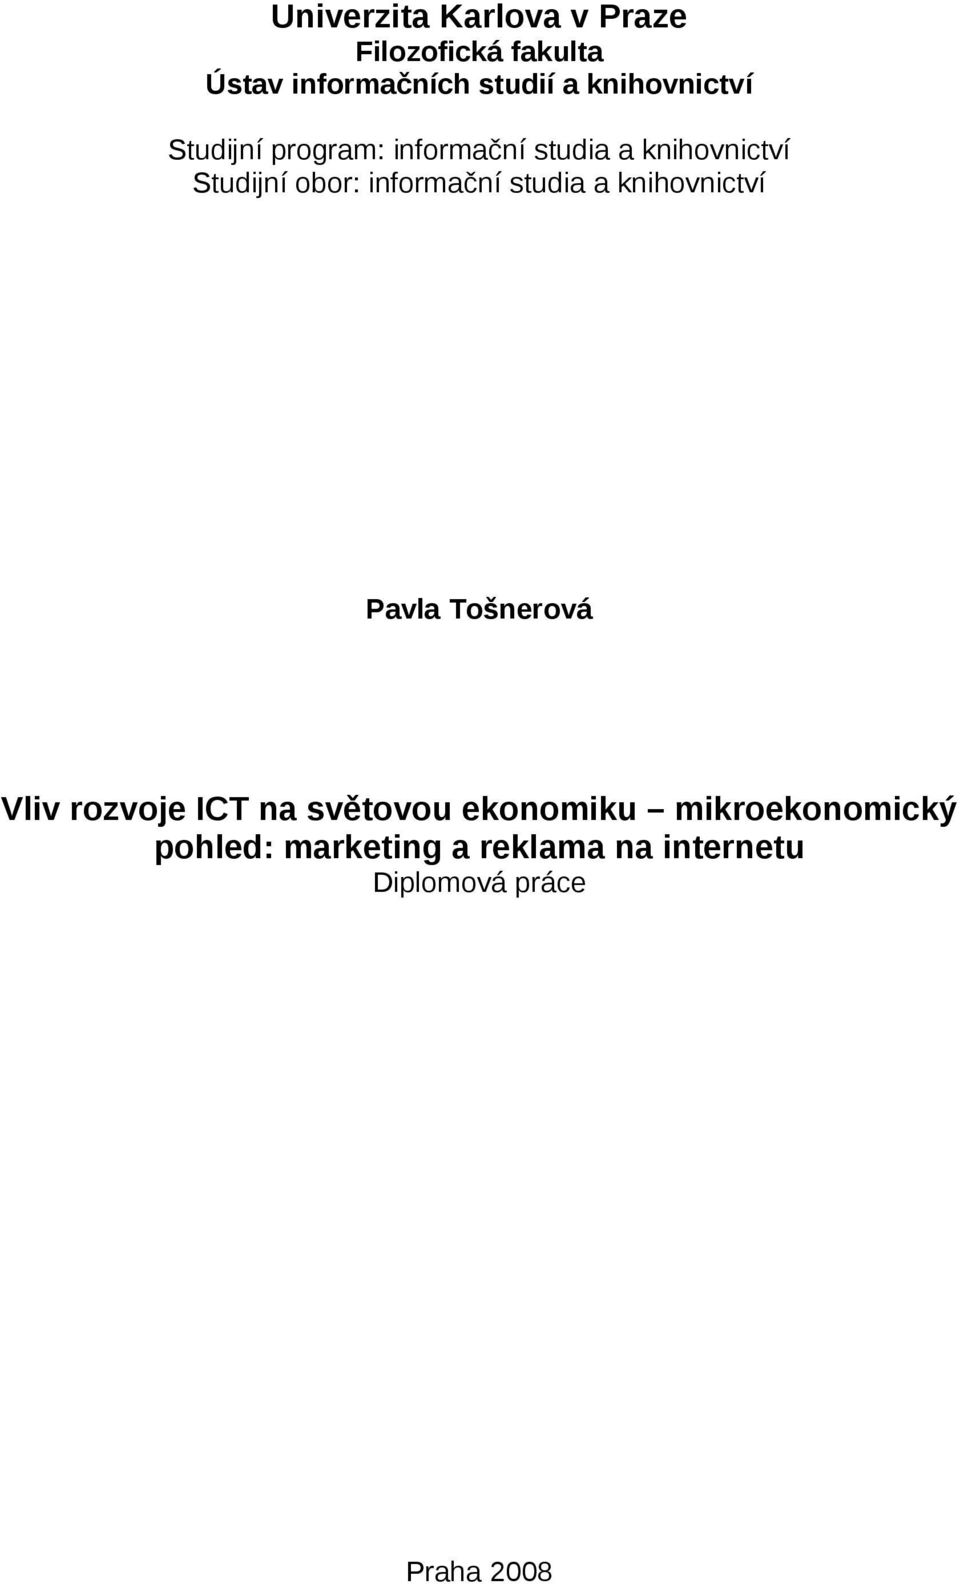 informační studia a knihovnictví Pavla Tošnerová Vliv rozvoje ICT na světovou